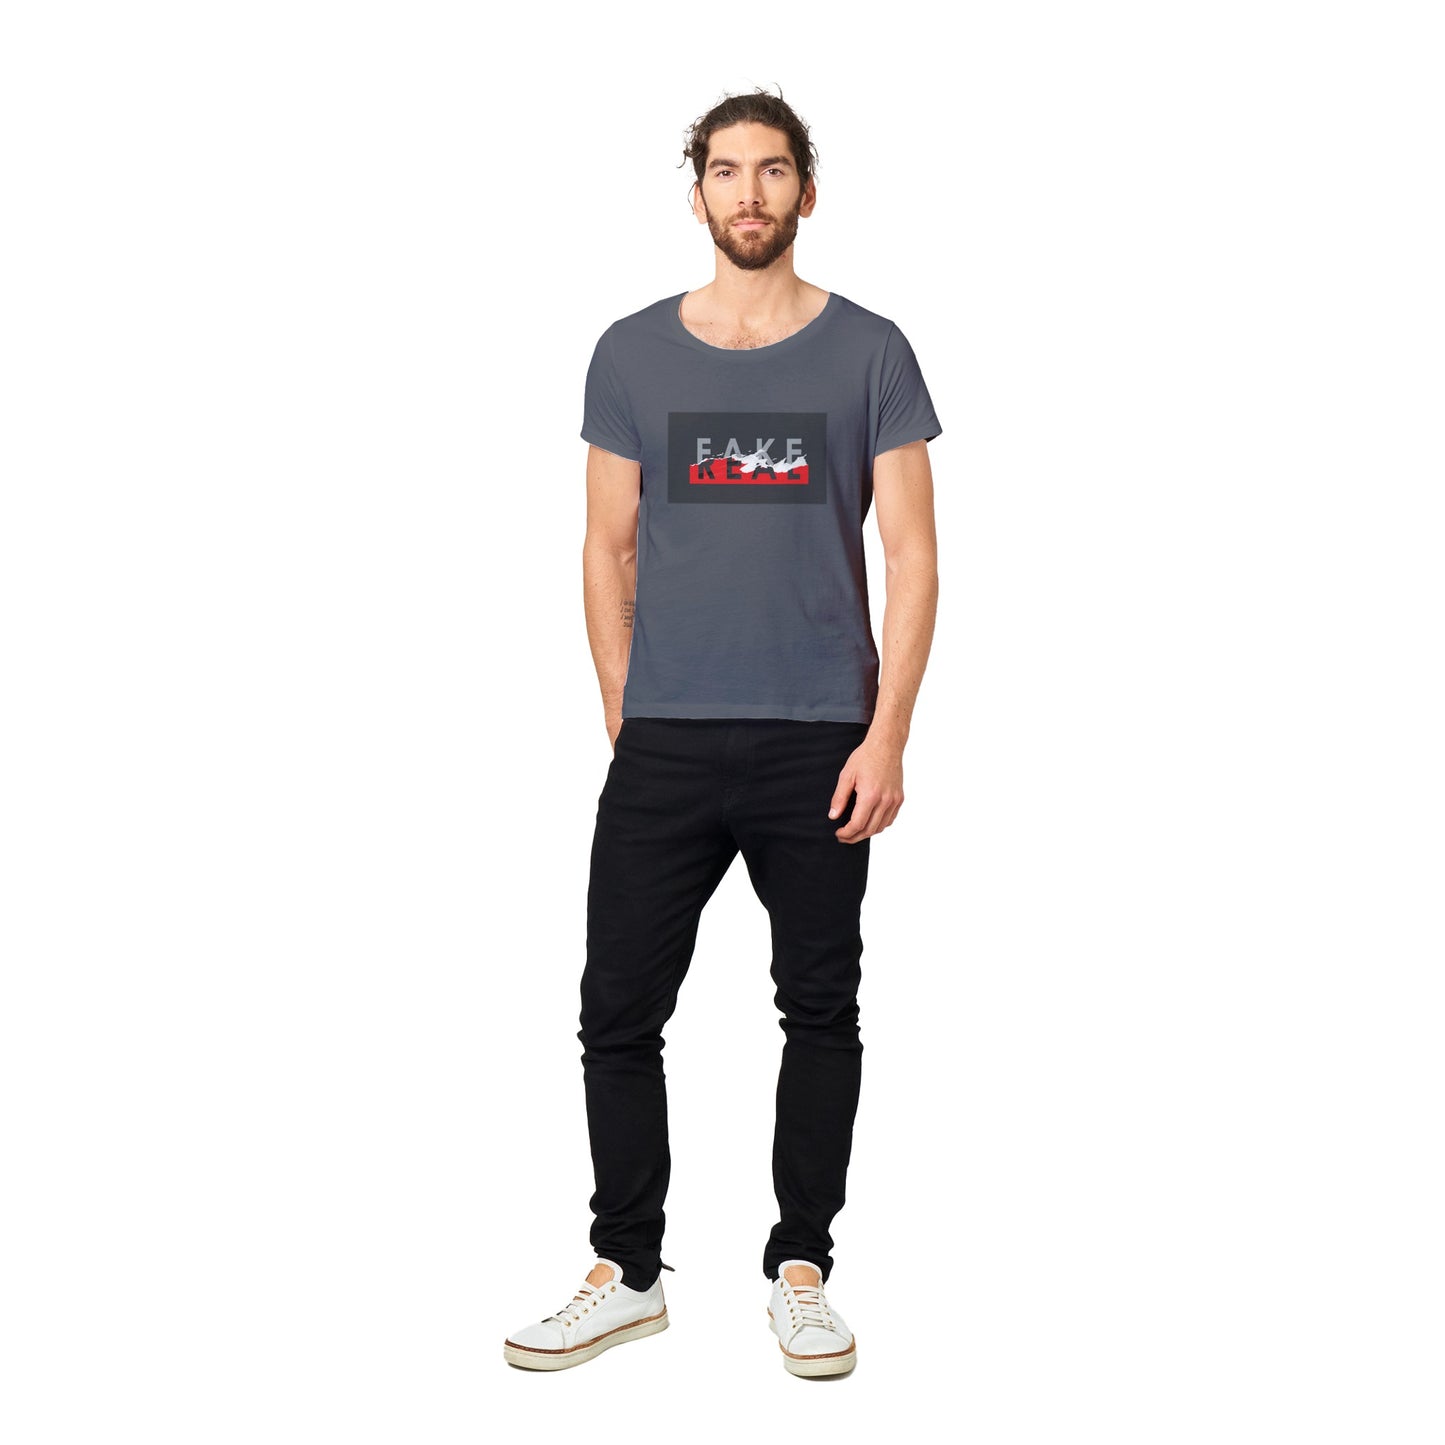 100%Organic Unisex T-shirt/Fake-Real